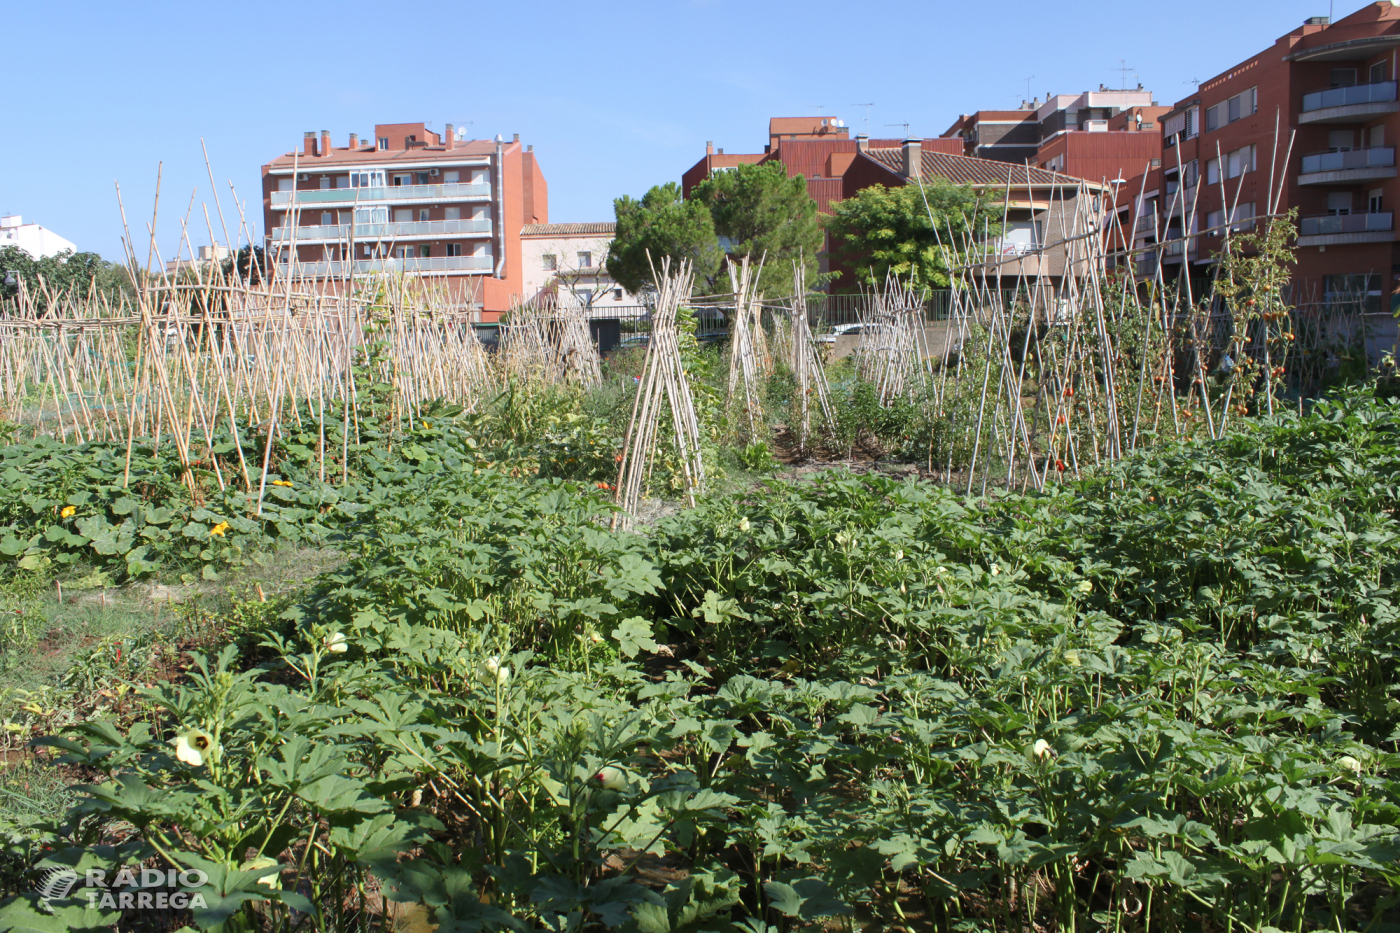 L’Ajuntament de Tàrrega ajorna fins l’any vinent el programa d’horts urbans a causa de la pandèmia